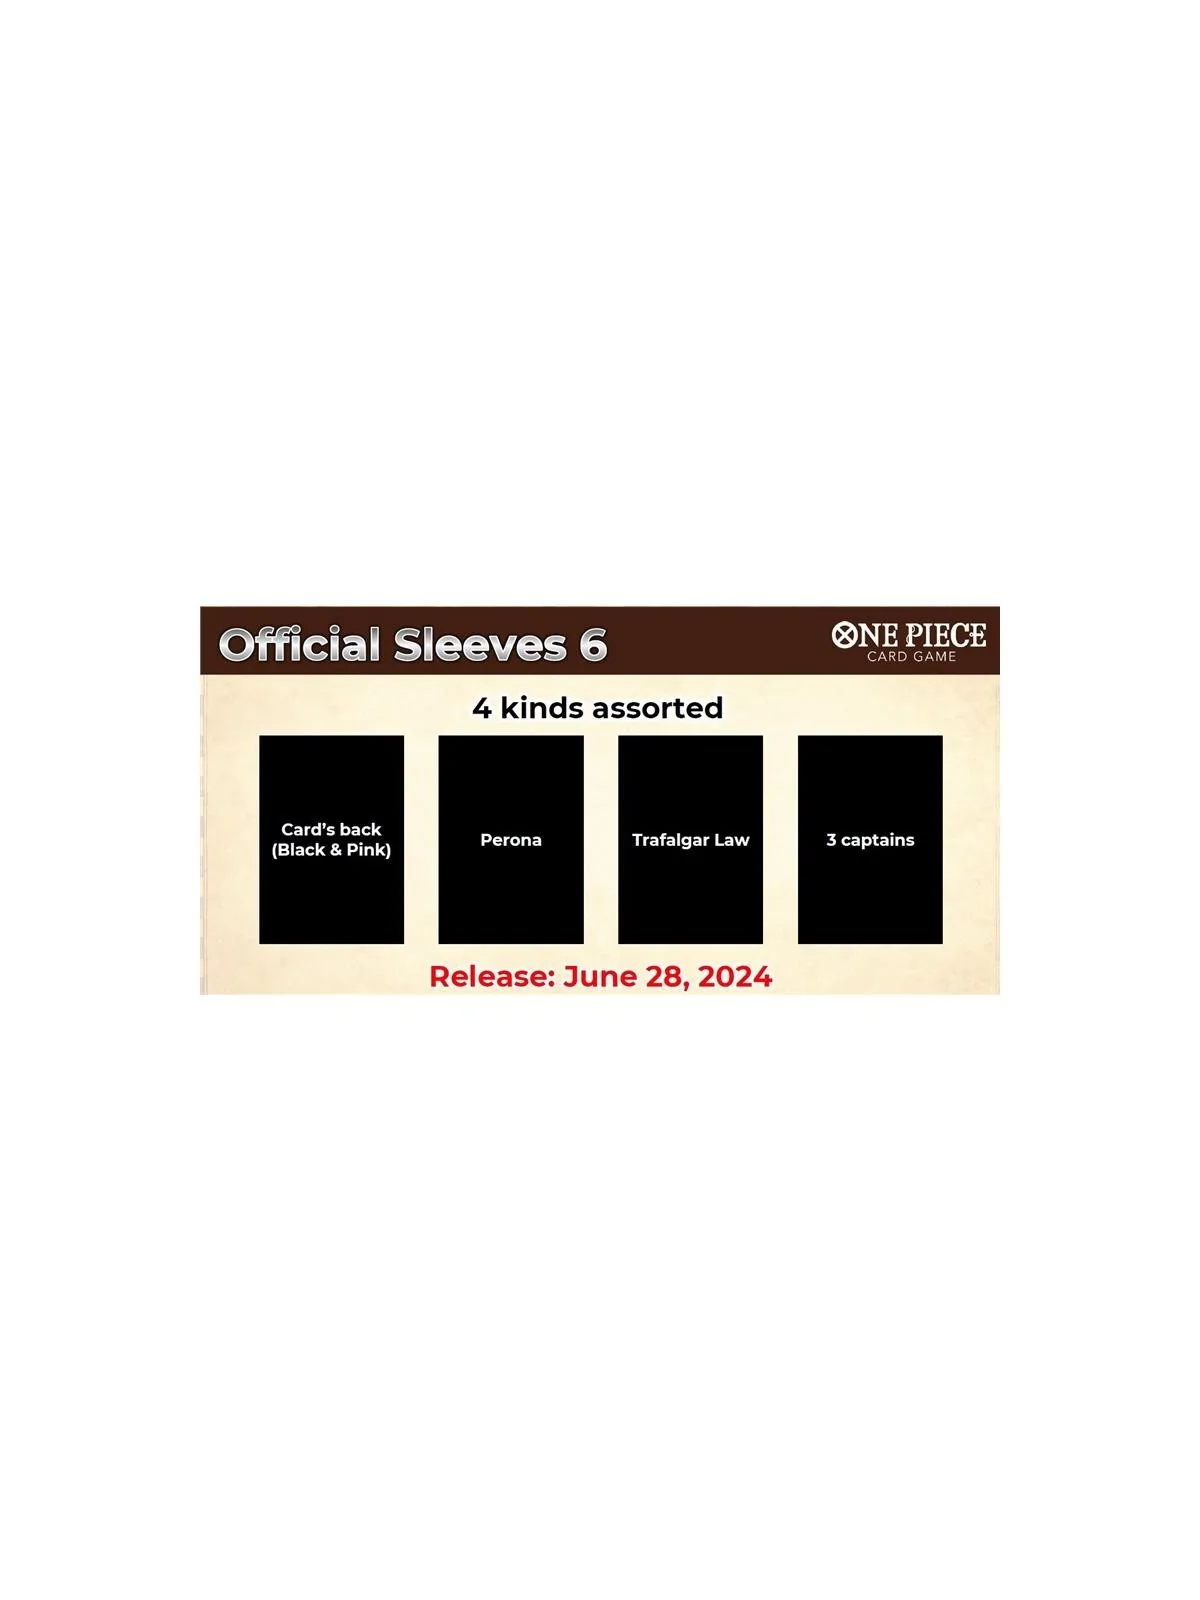 Comprar OPCG: Official Sleeves 6 [PREVENTA] barato al mejor precio 9,9